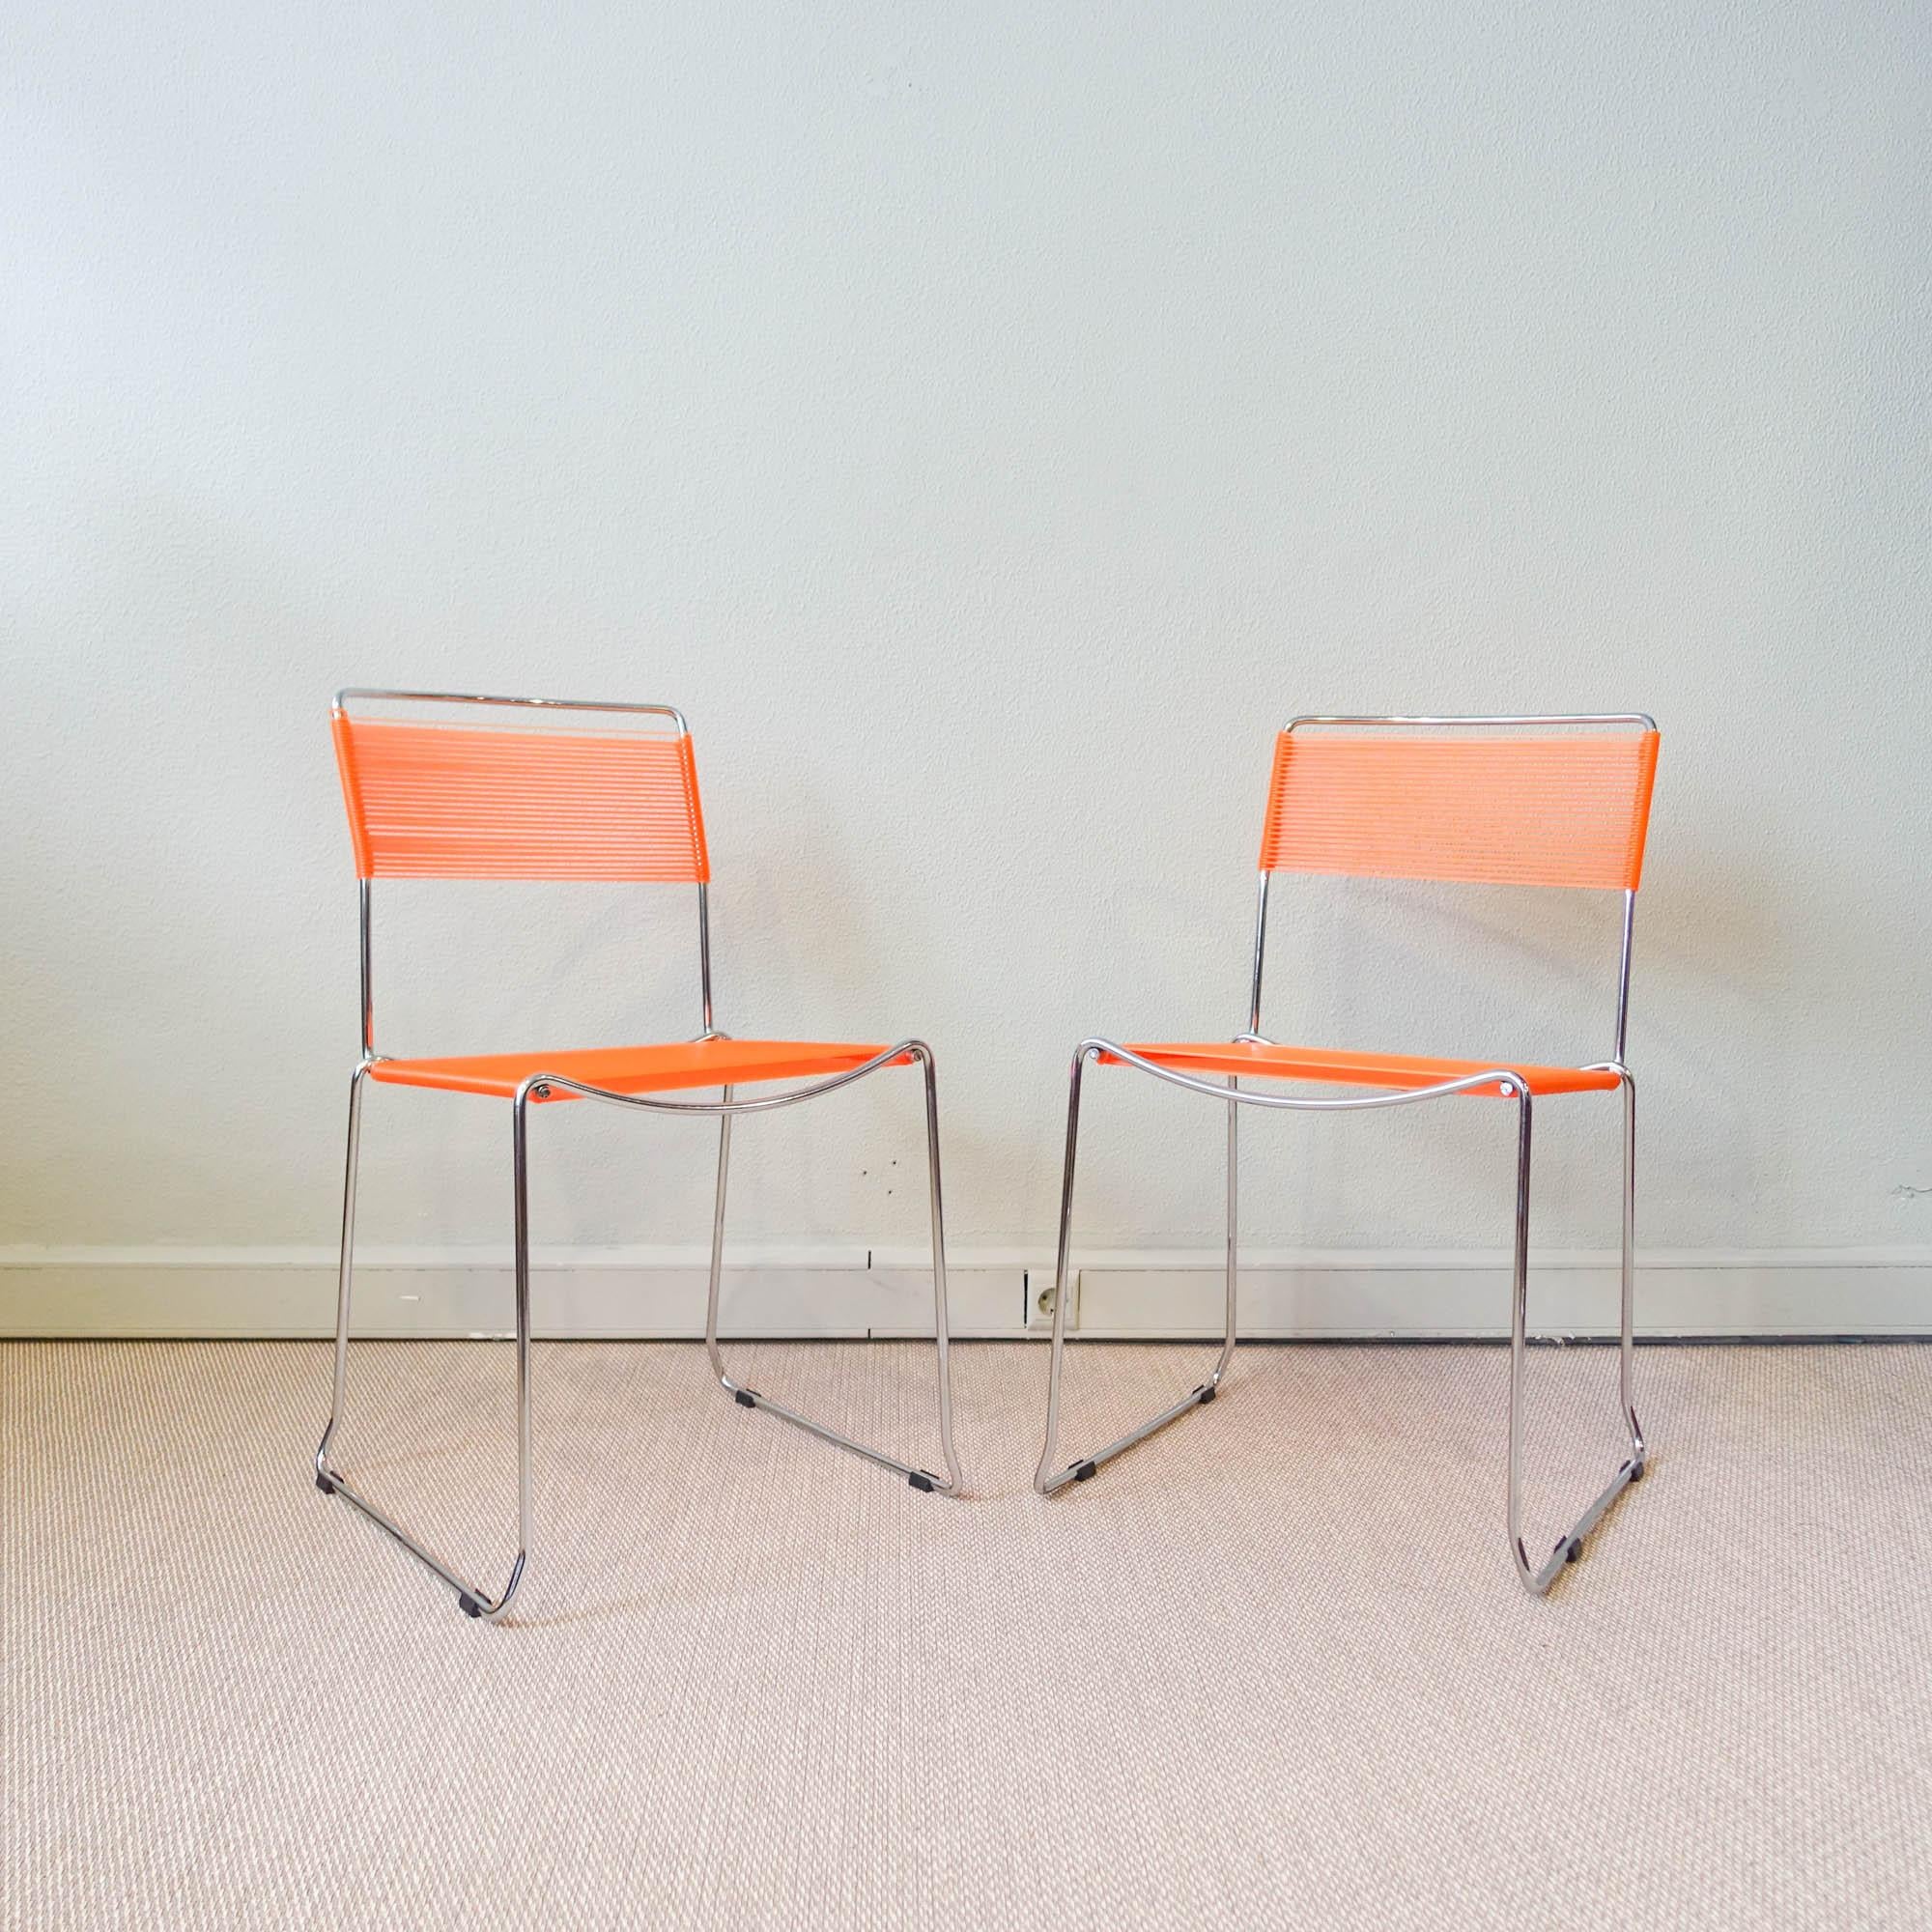 Cette paire de chaises Spaghetti a été conçue par Giandomenico Belotti pour Alias, en Italie, dans les années 1980. Ils ont des cadres en acier chromé et des sangles orange. Toutes les sangles en PVC ne sont toujours pas déchirées ou usées. 
la